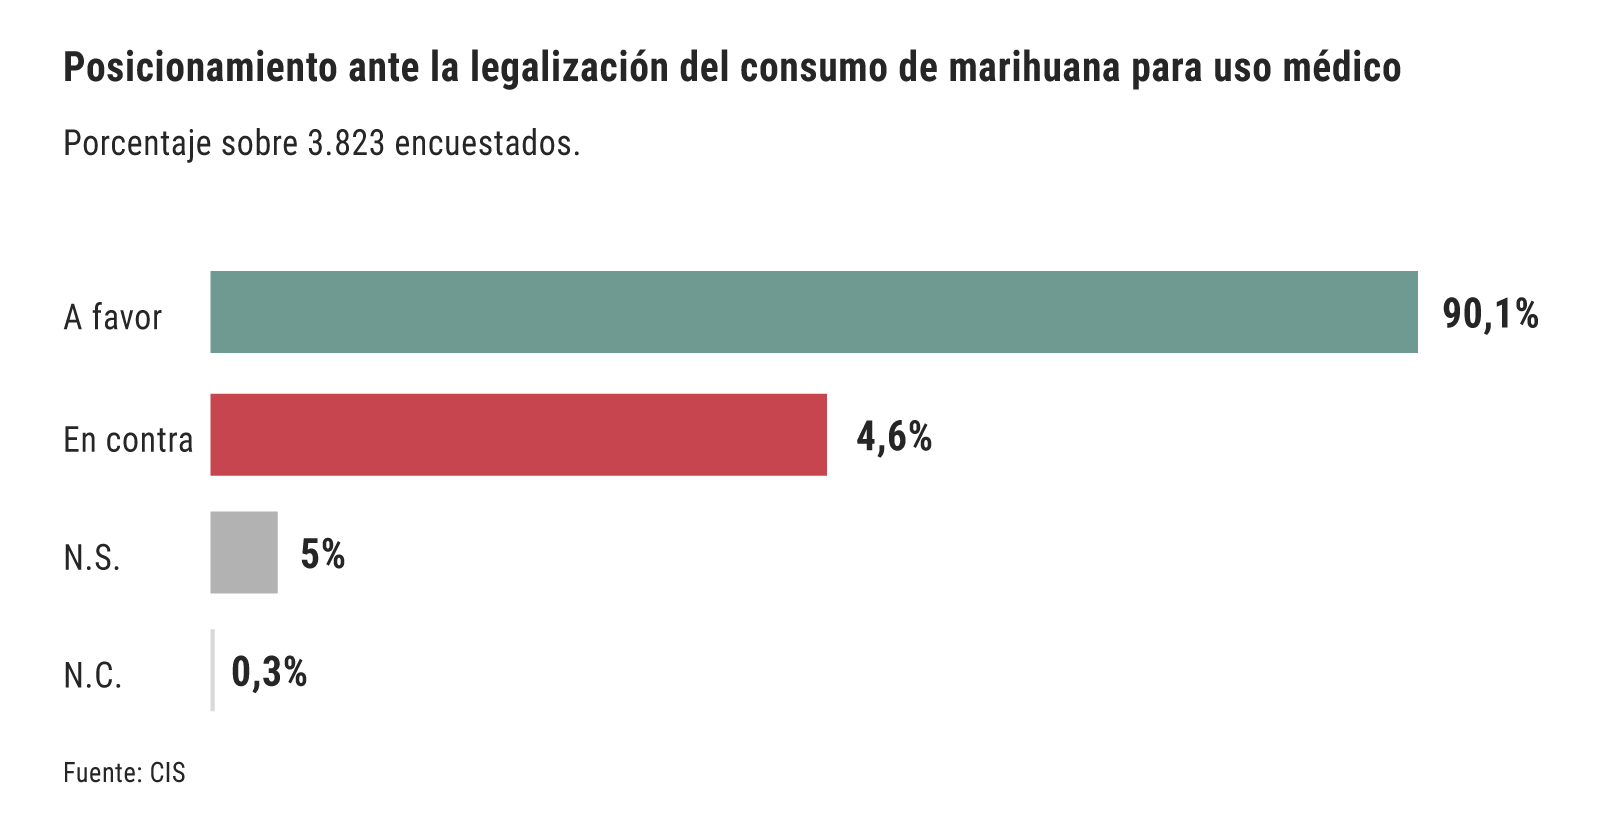 Población dispuesta a la legalización del cannabis para uso médico. Fuente: CIS